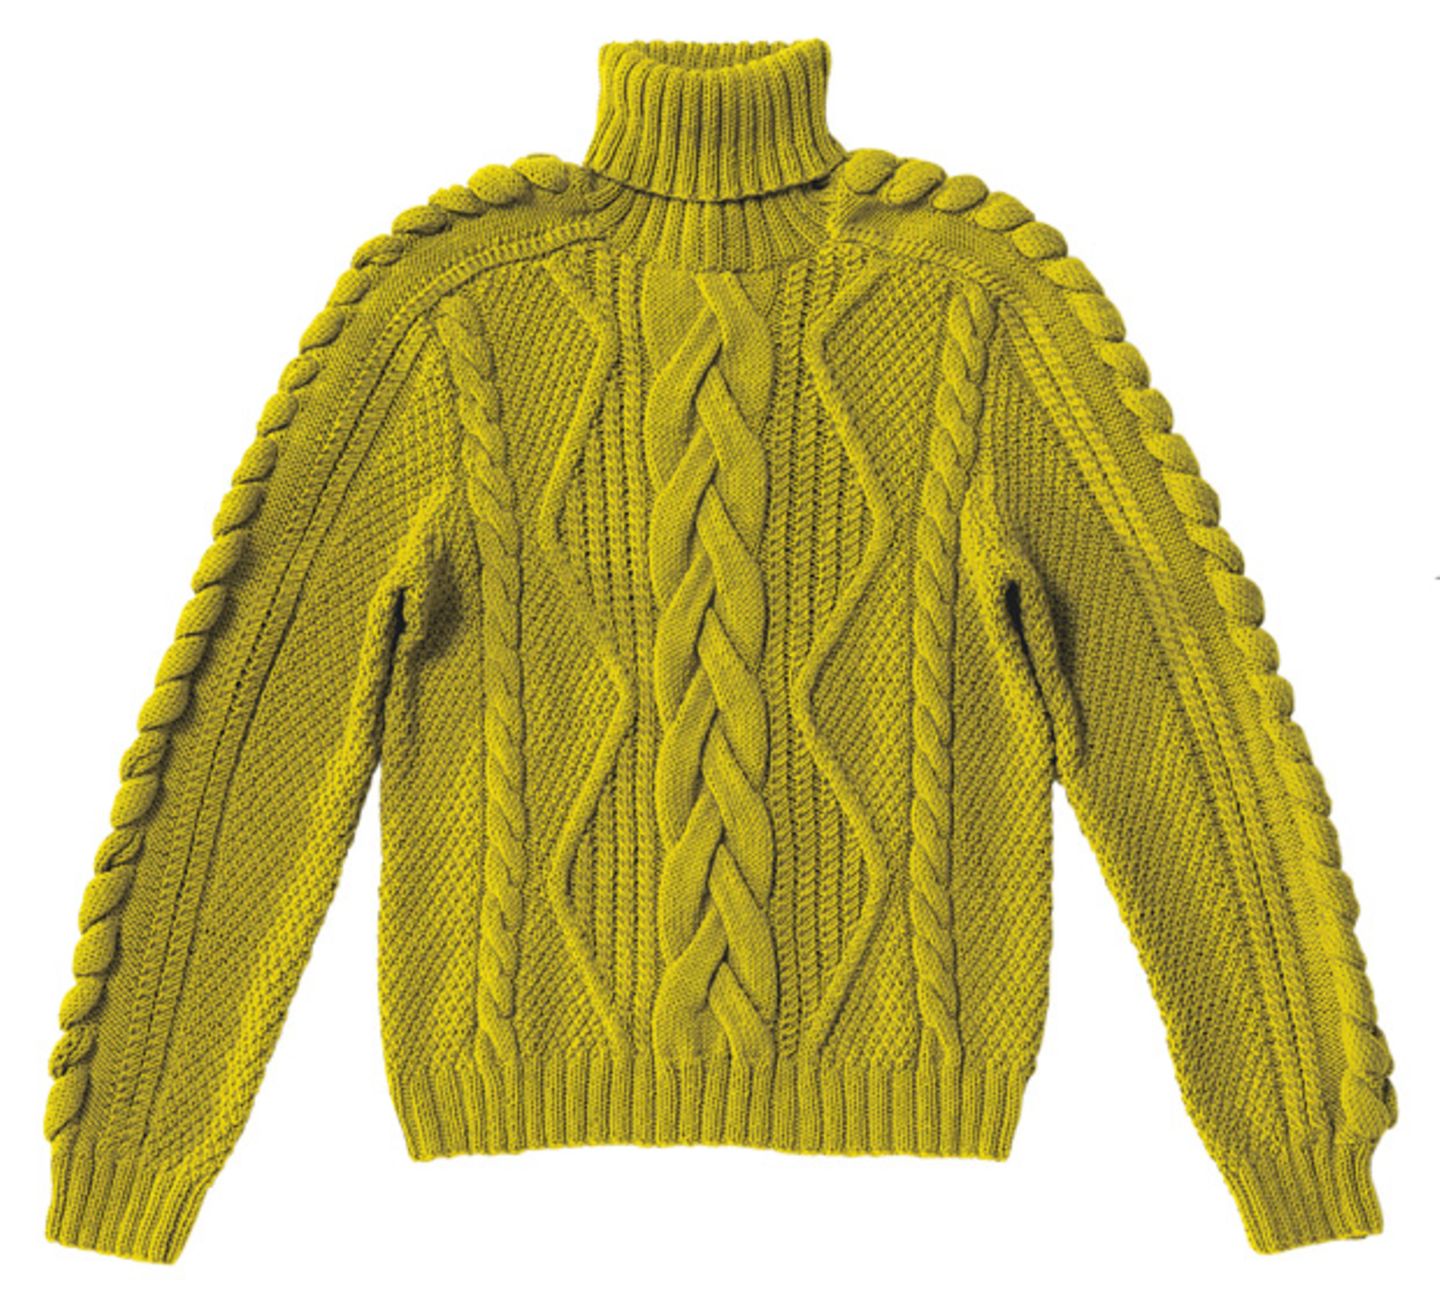 Strickanleitung: Pullover mit Zopfrautenmuster stricken